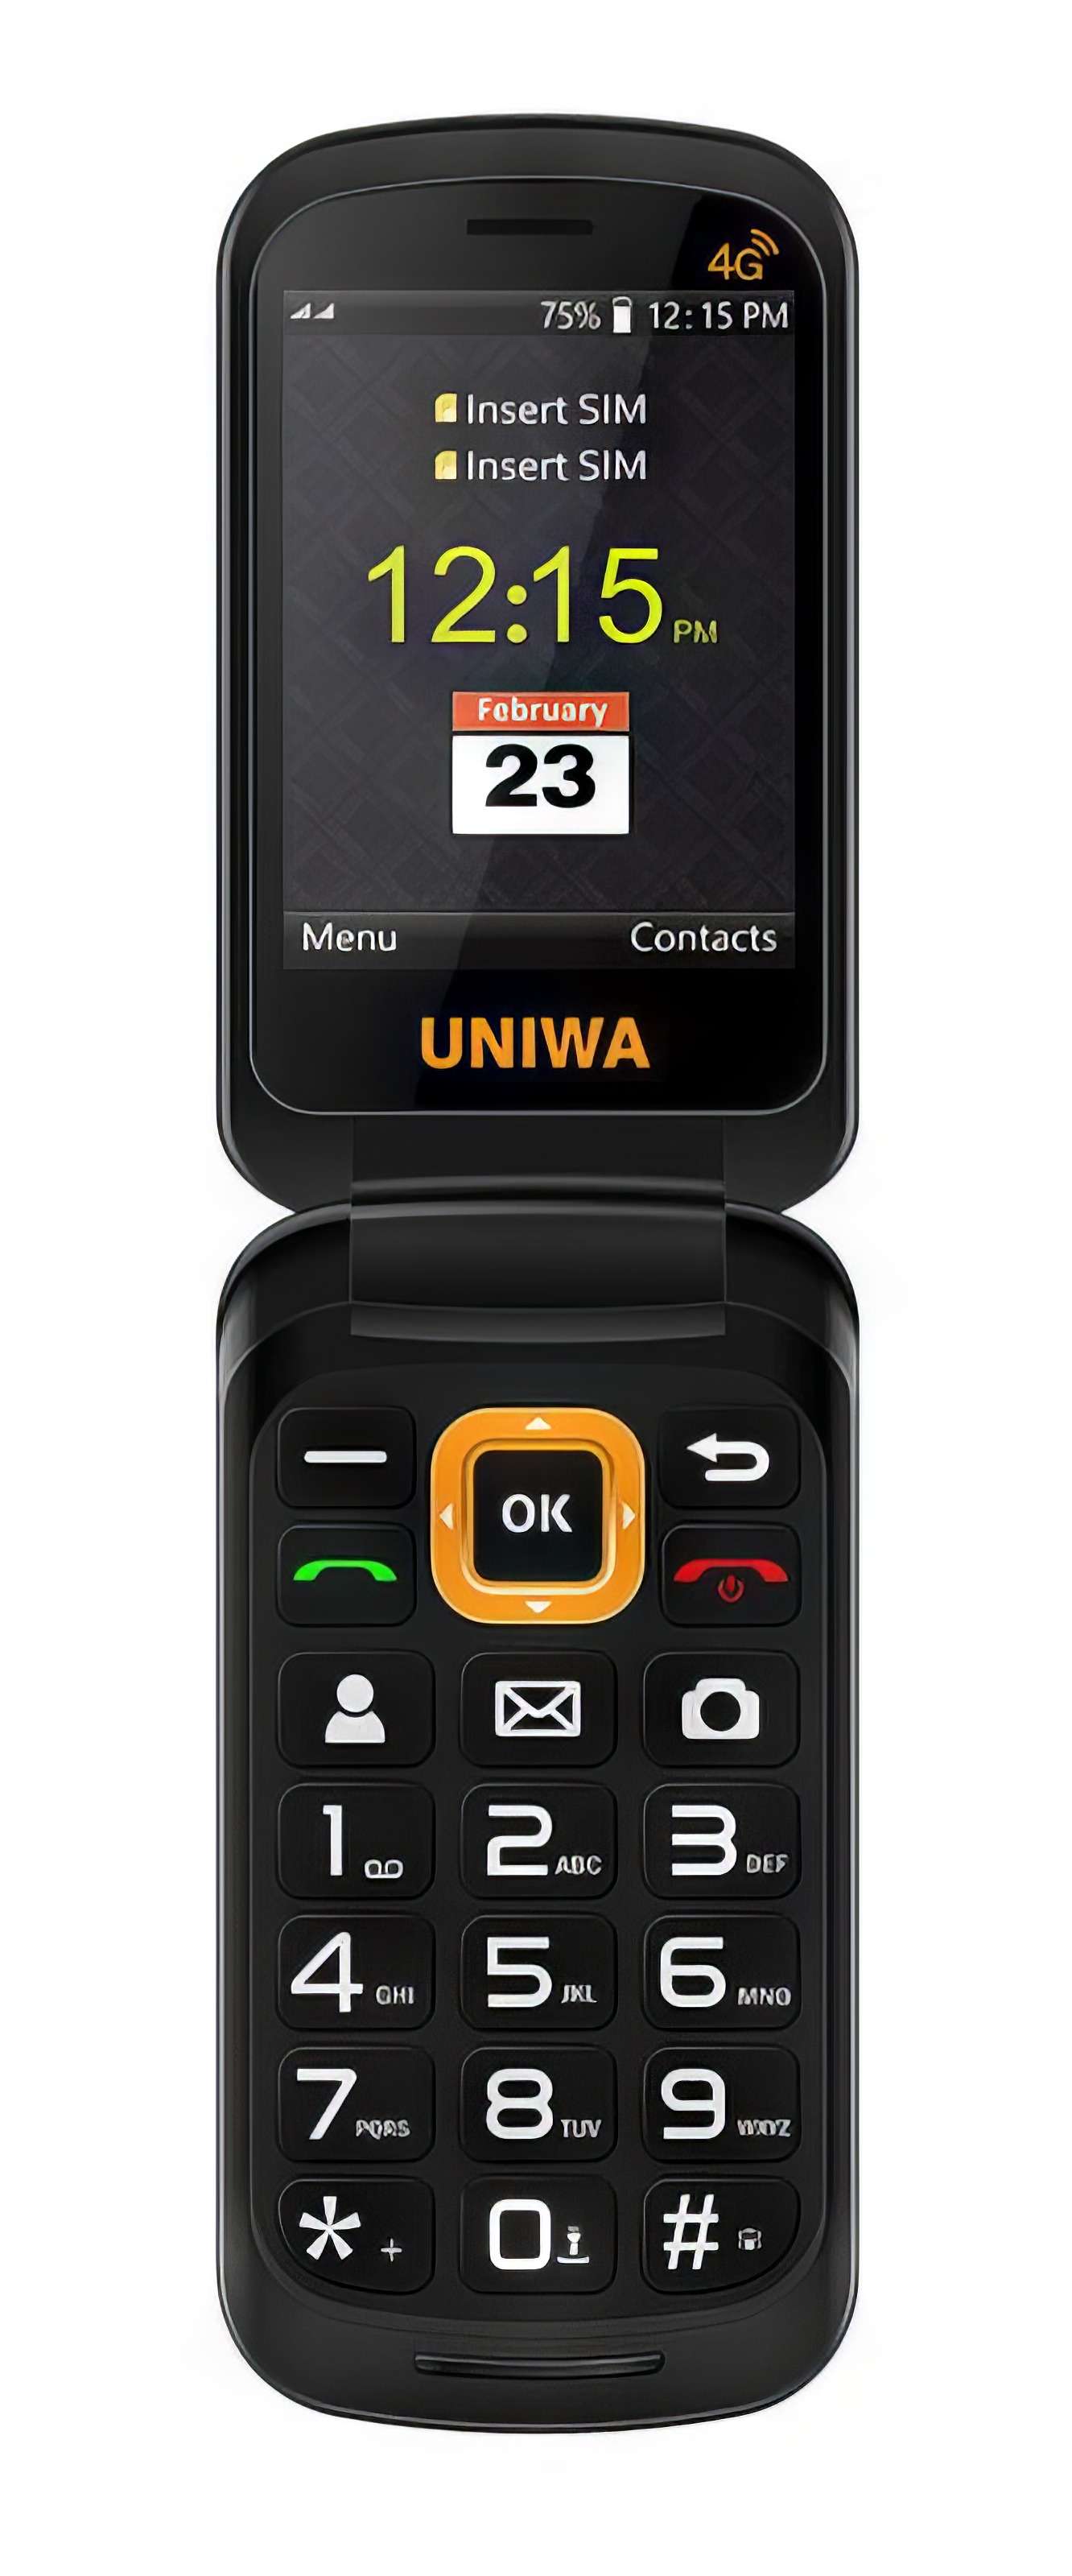 Мобильный телефон UNIWA V909T Flip Phone Gray мобильный телефон nokia